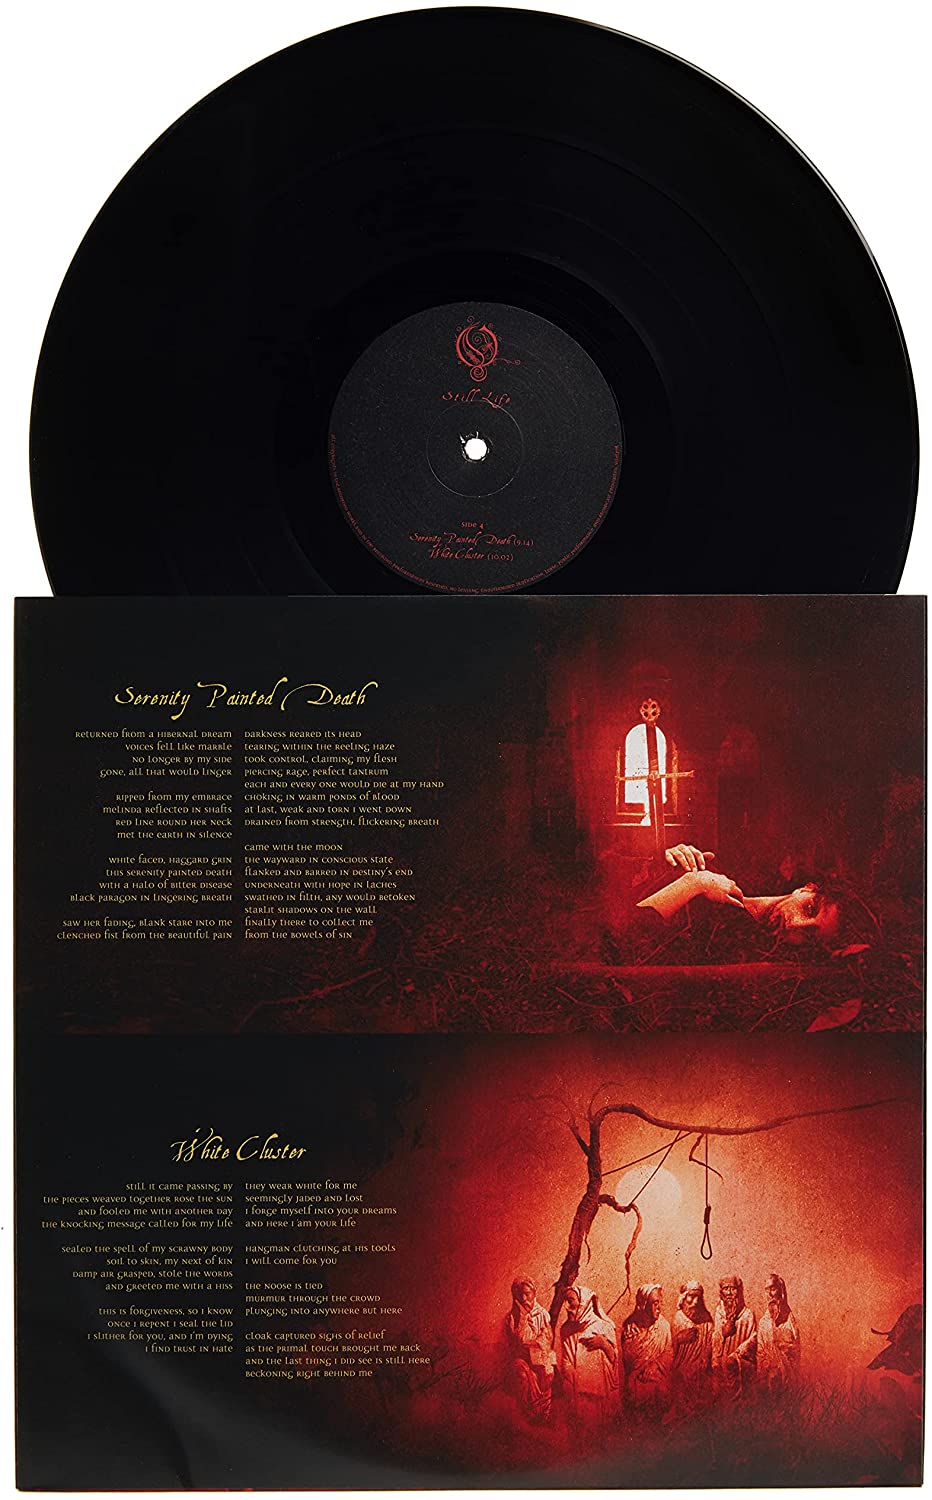 Opeth - Still Life [VINYL]